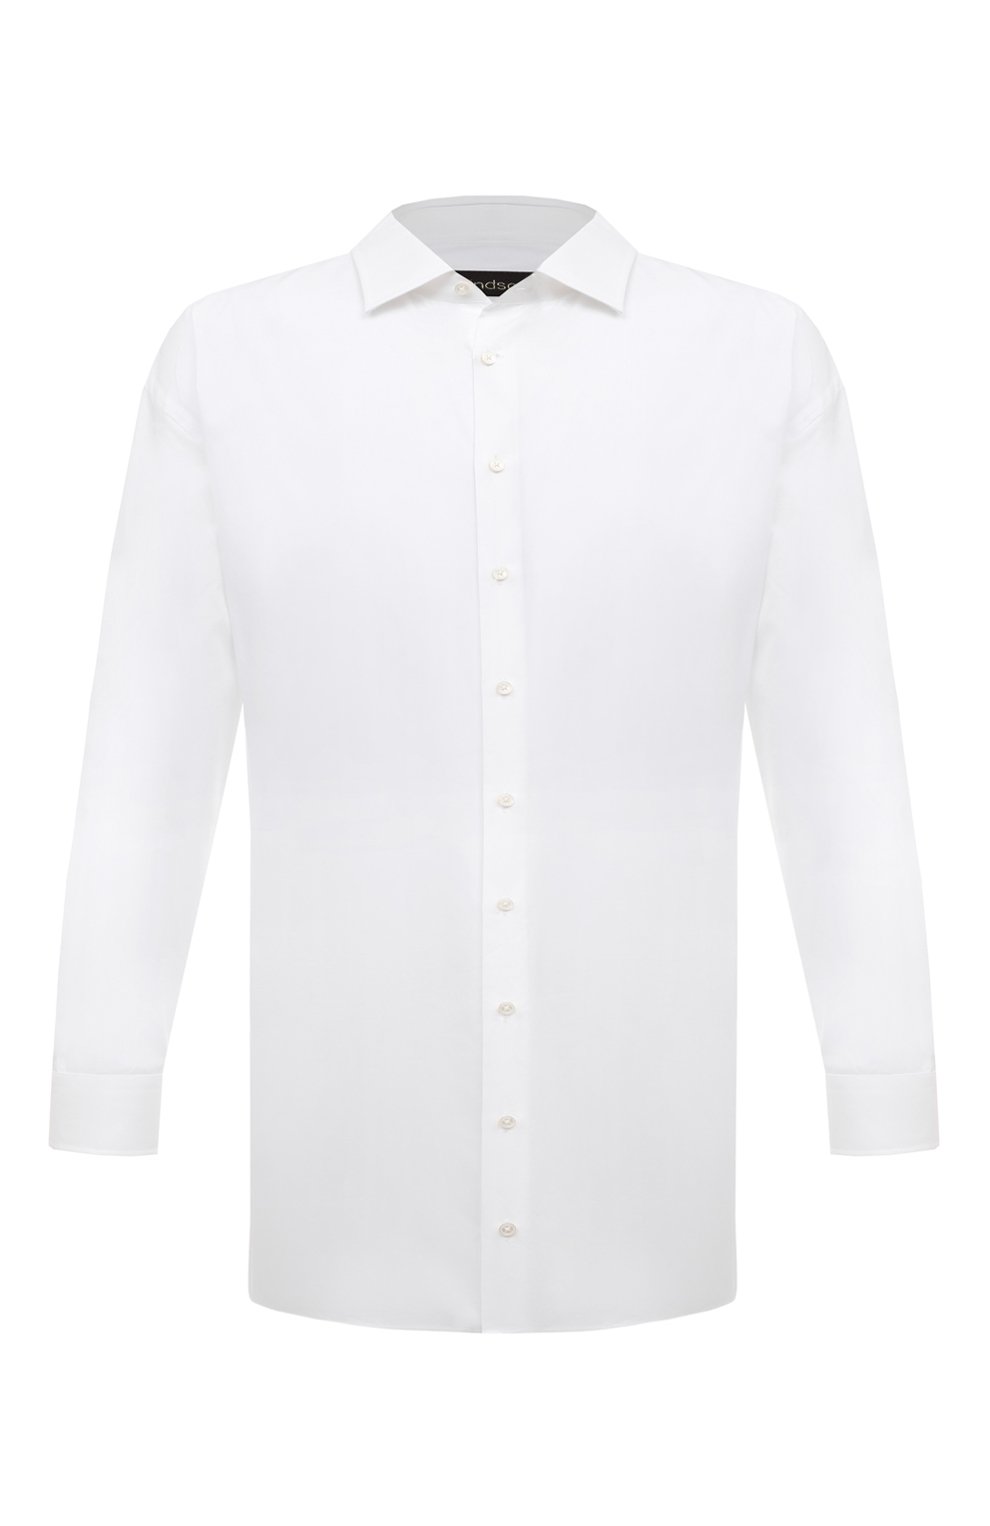 Фото Мужская белая хлопковая рубашка WINDSOR, арт. 13 RINALD0-U-EXTRA L0NG/10017511 Италия 13 RINALD0-U-EXTRA L0NG/10017511 